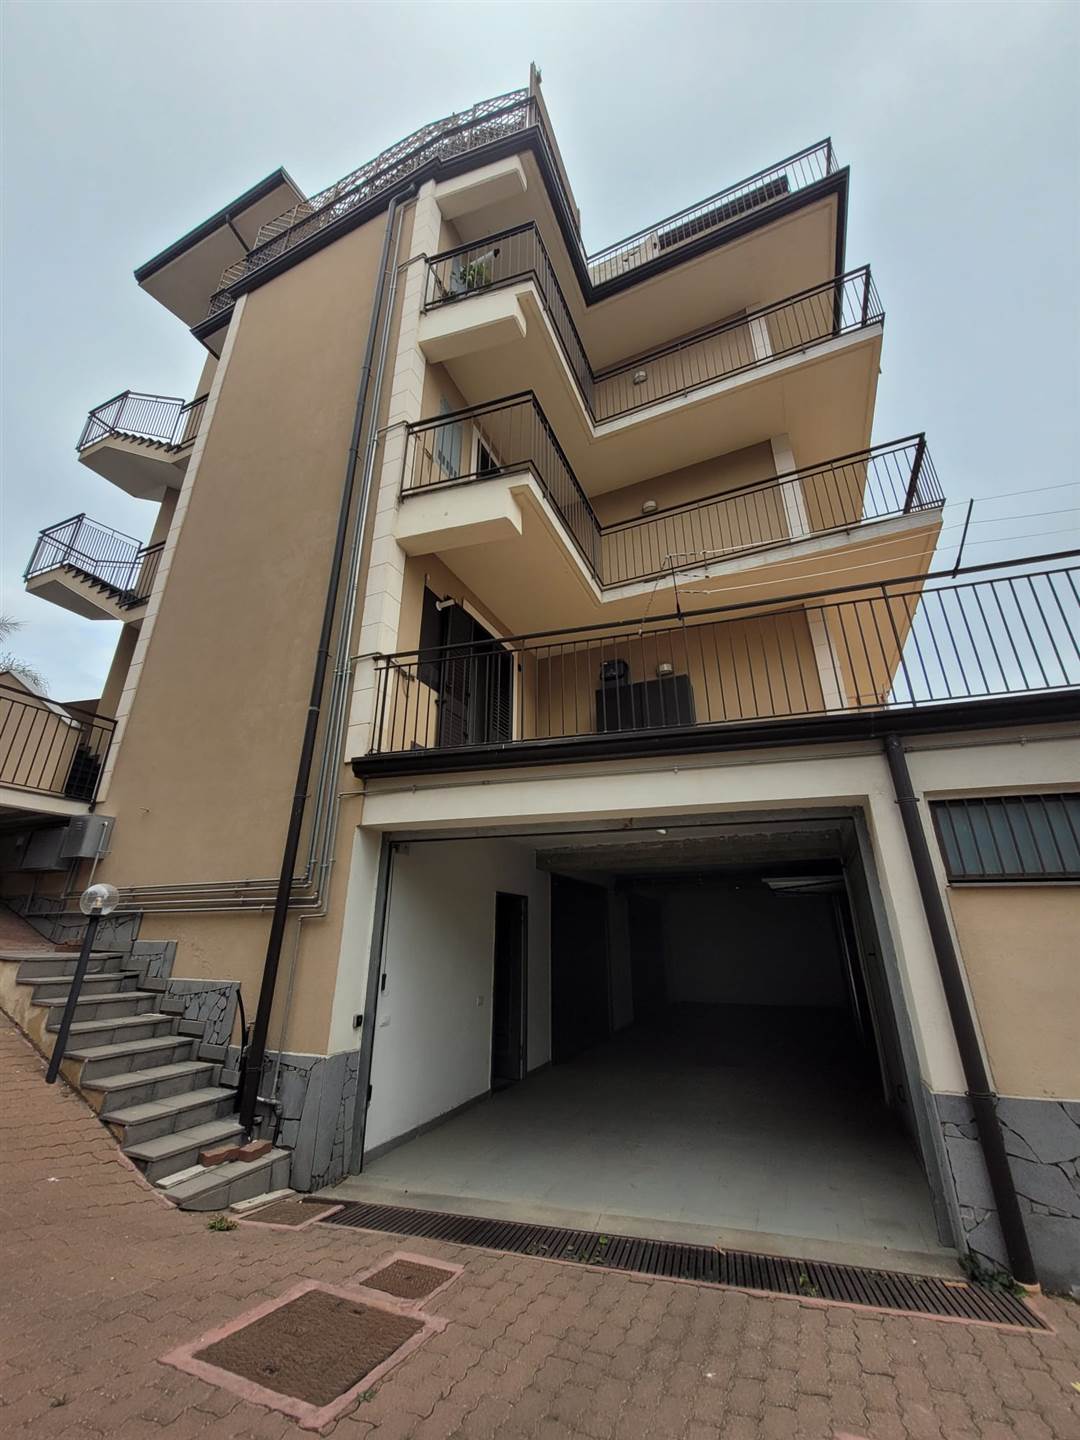 Appartamento in affitto a Belpasso, 4 locali, prezzo € 650 | PortaleAgenzieImmobiliari.it